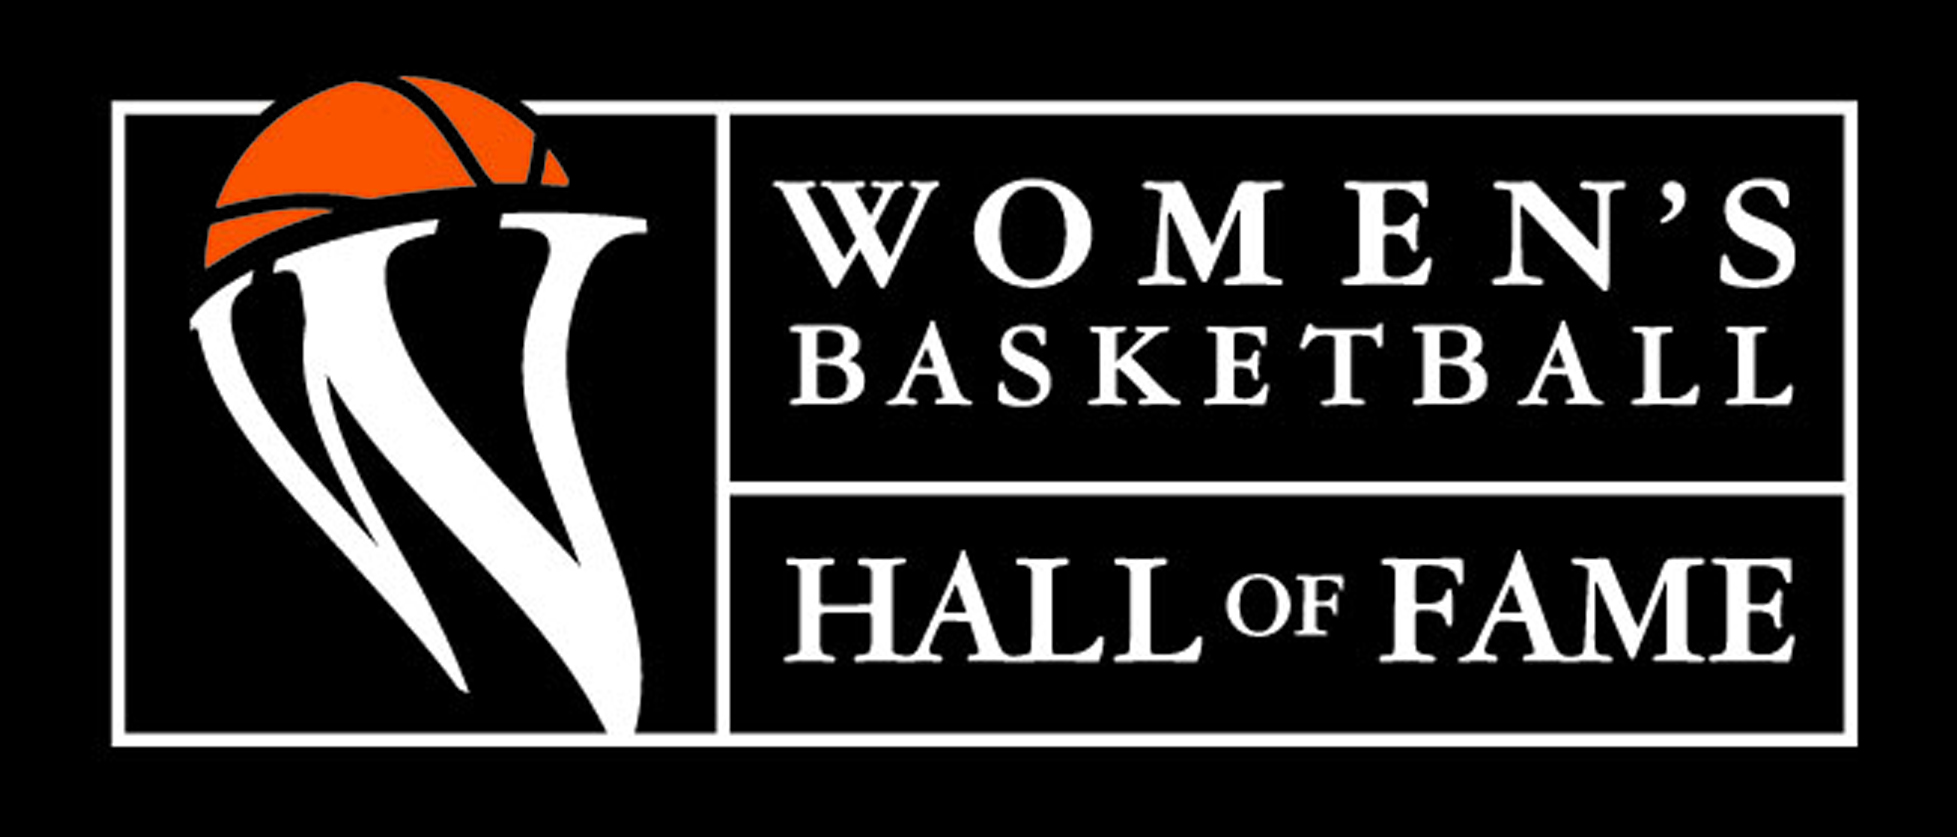 Women's Basketball Hall of Fame